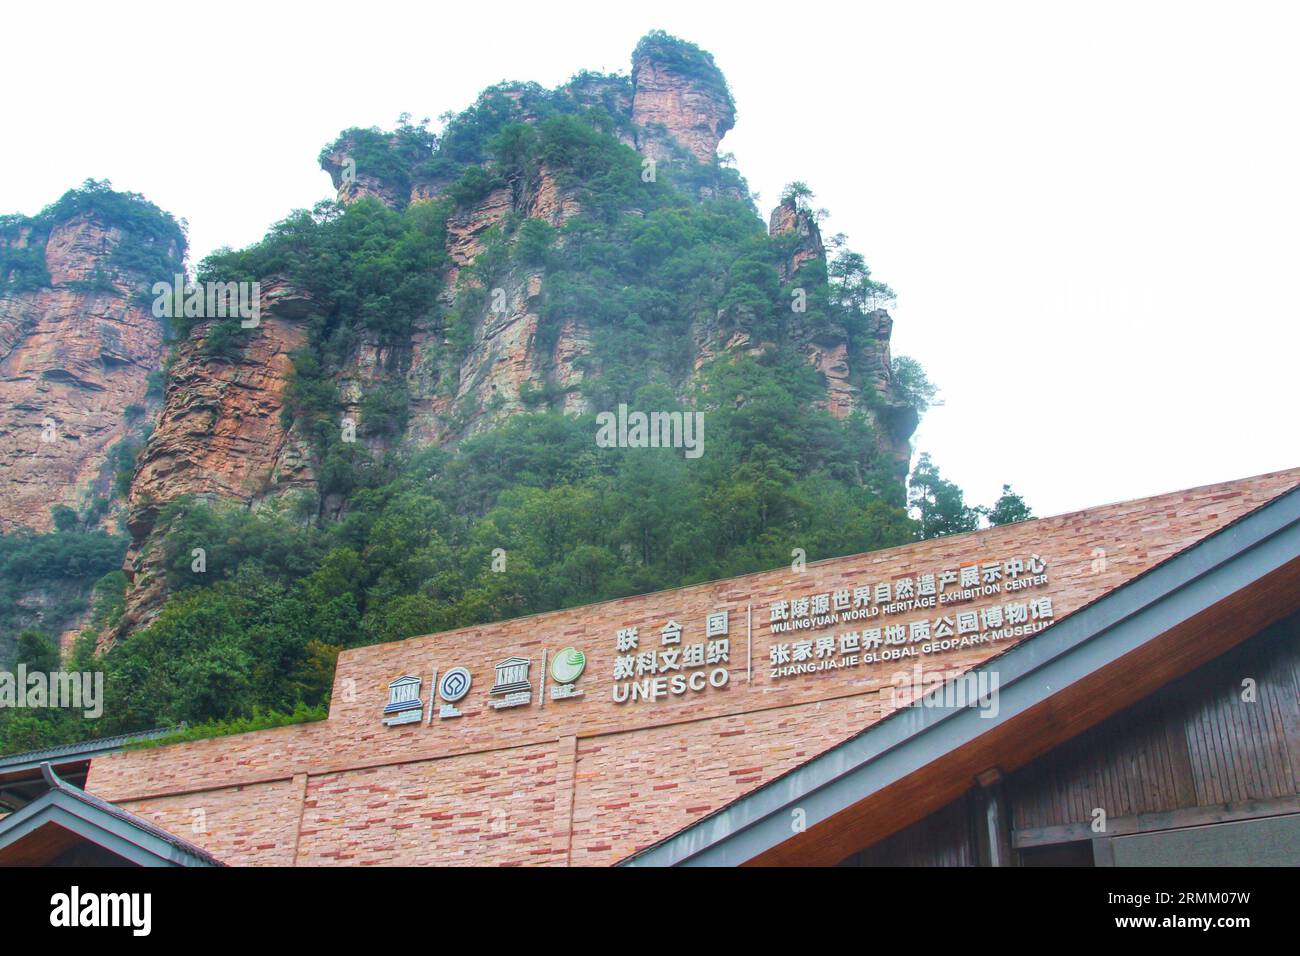 ) : Voyage à travers les vues impressionnantes de majestueuses montagnes de Chine, comme Avatar, où la réalité rencontre l'émerveillement cinématographique Banque D'Images